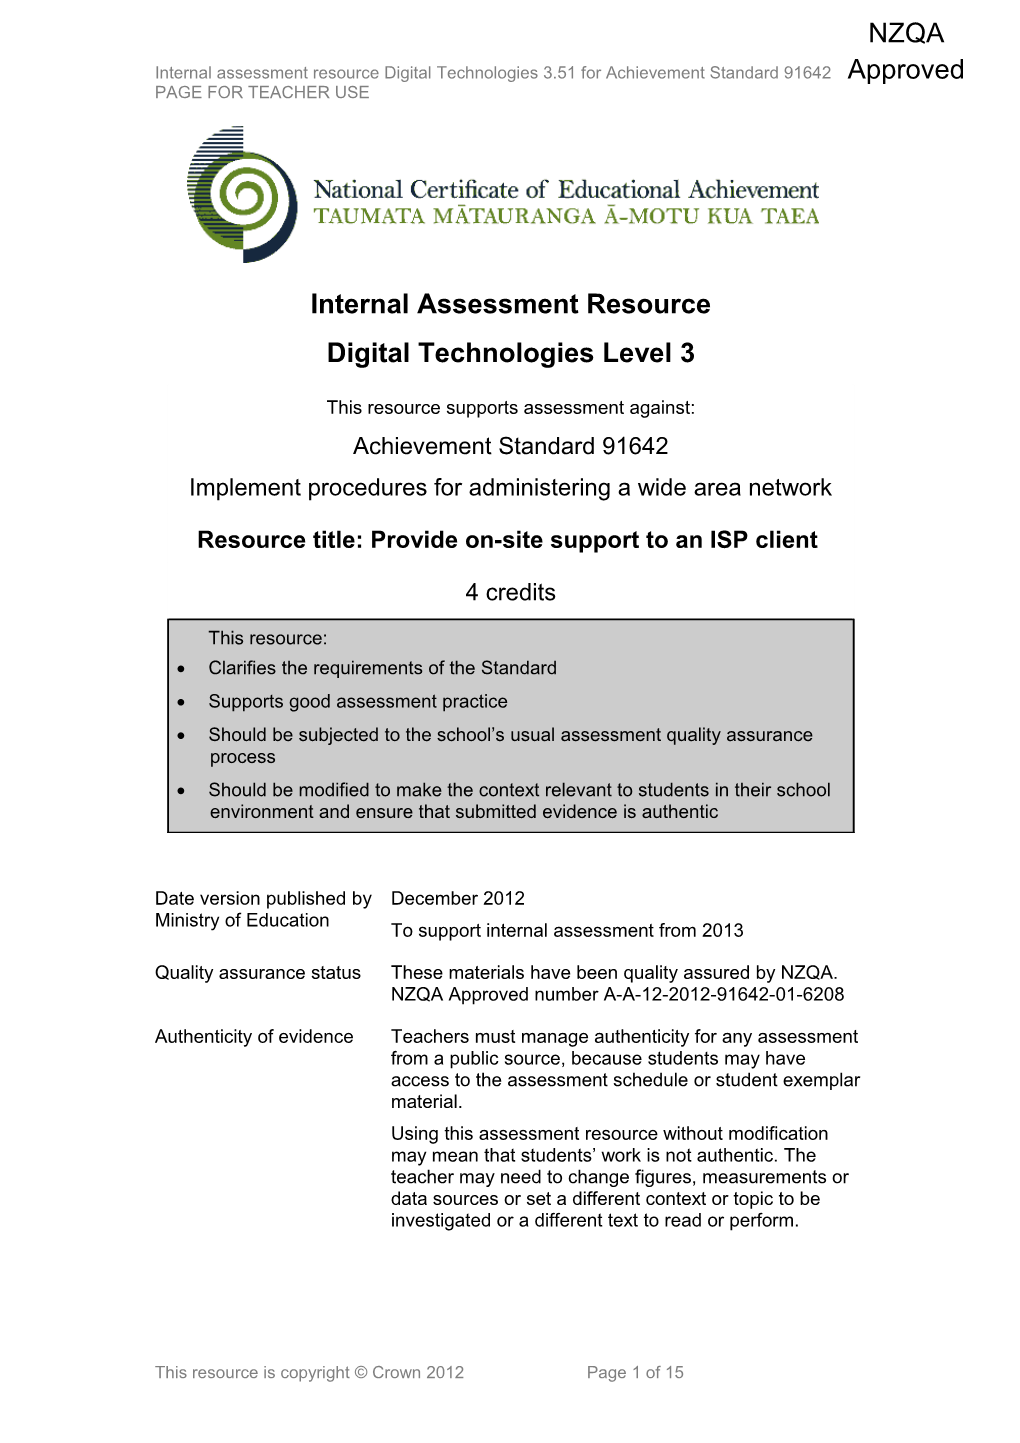 Level 3 Digital Technologies Internal Assessment Resource